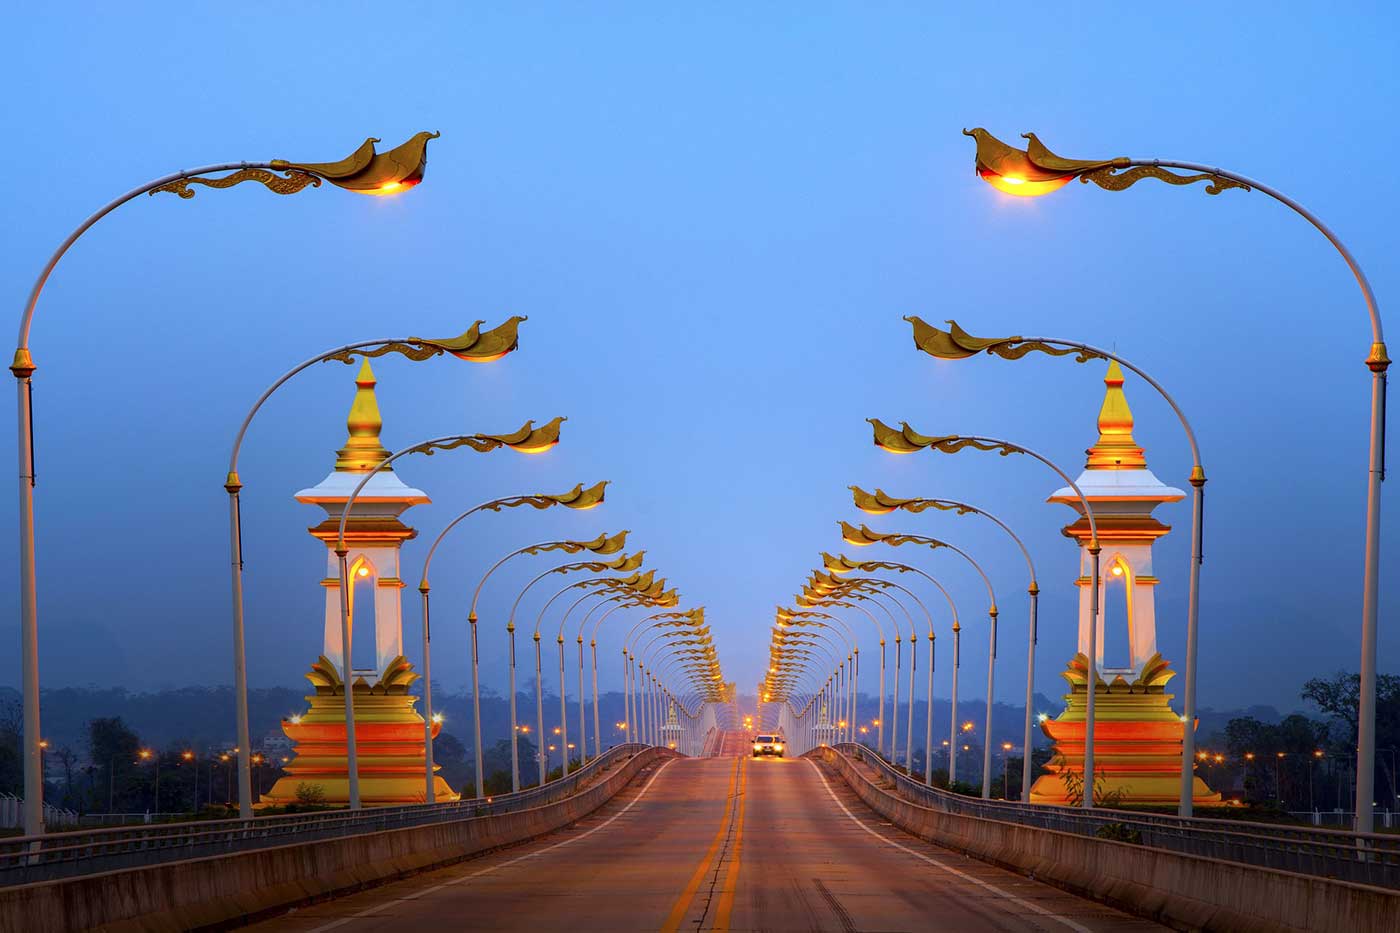 Lights on a bridge